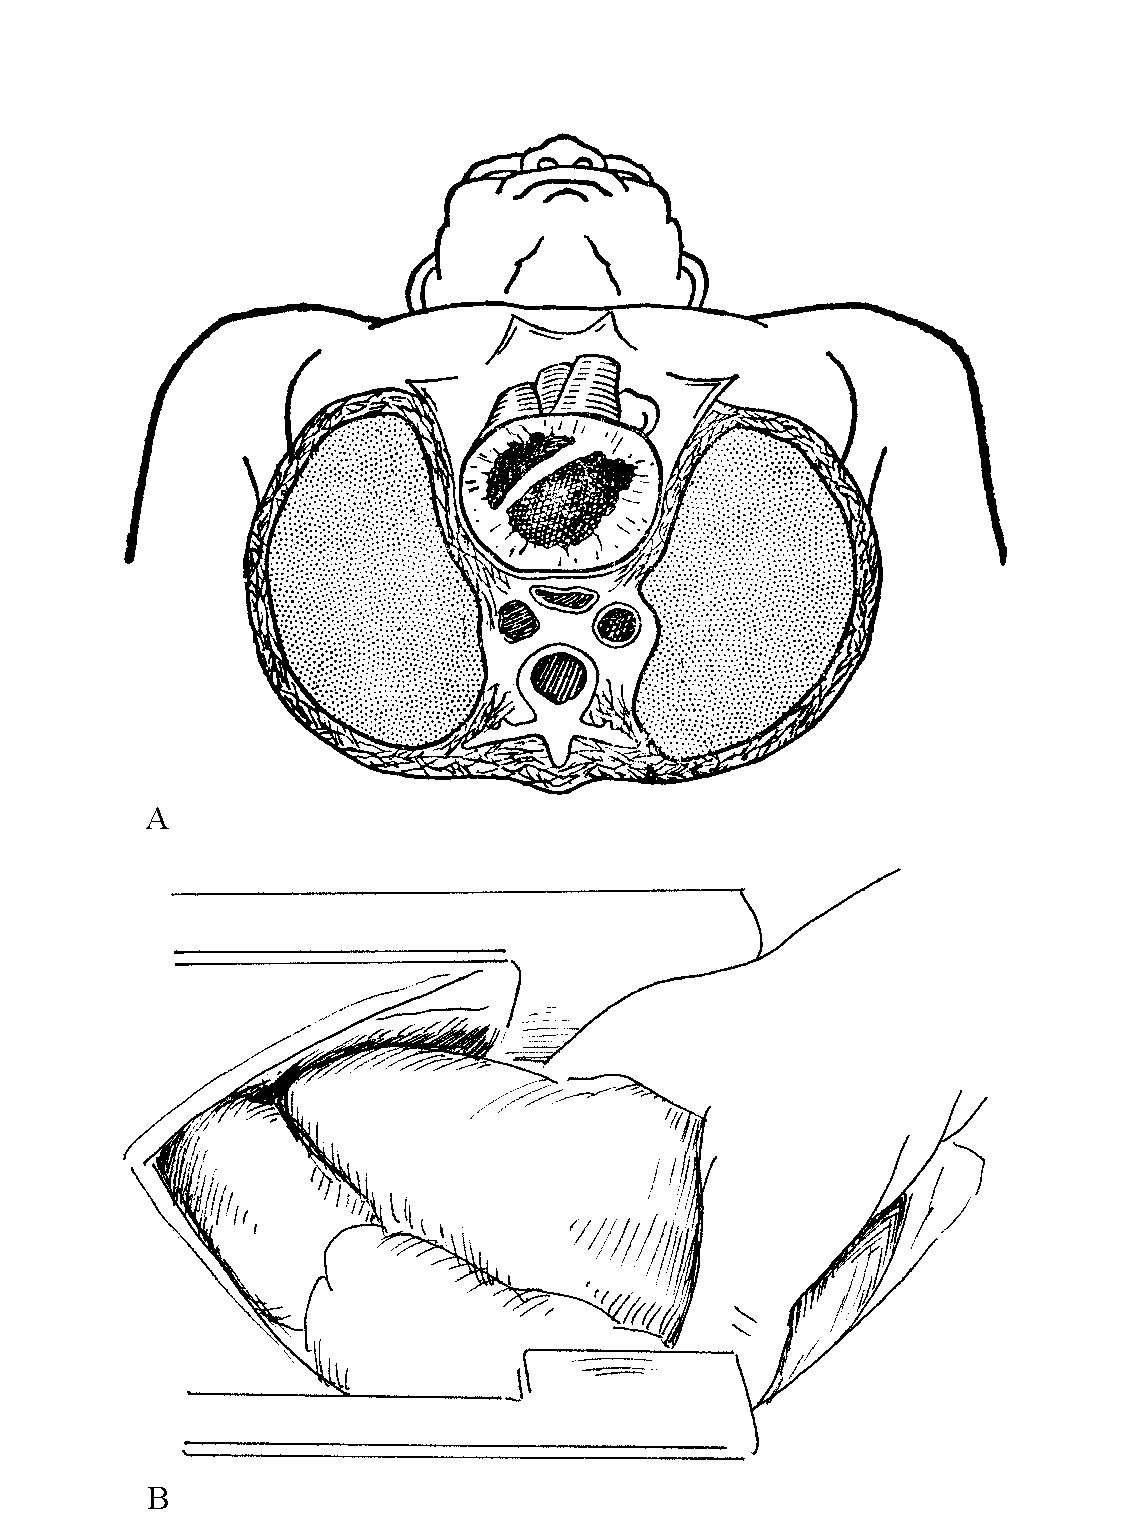 图2-5　A为经胸骨中部的横断面，心脏位于胸骨下方，位置表浅；